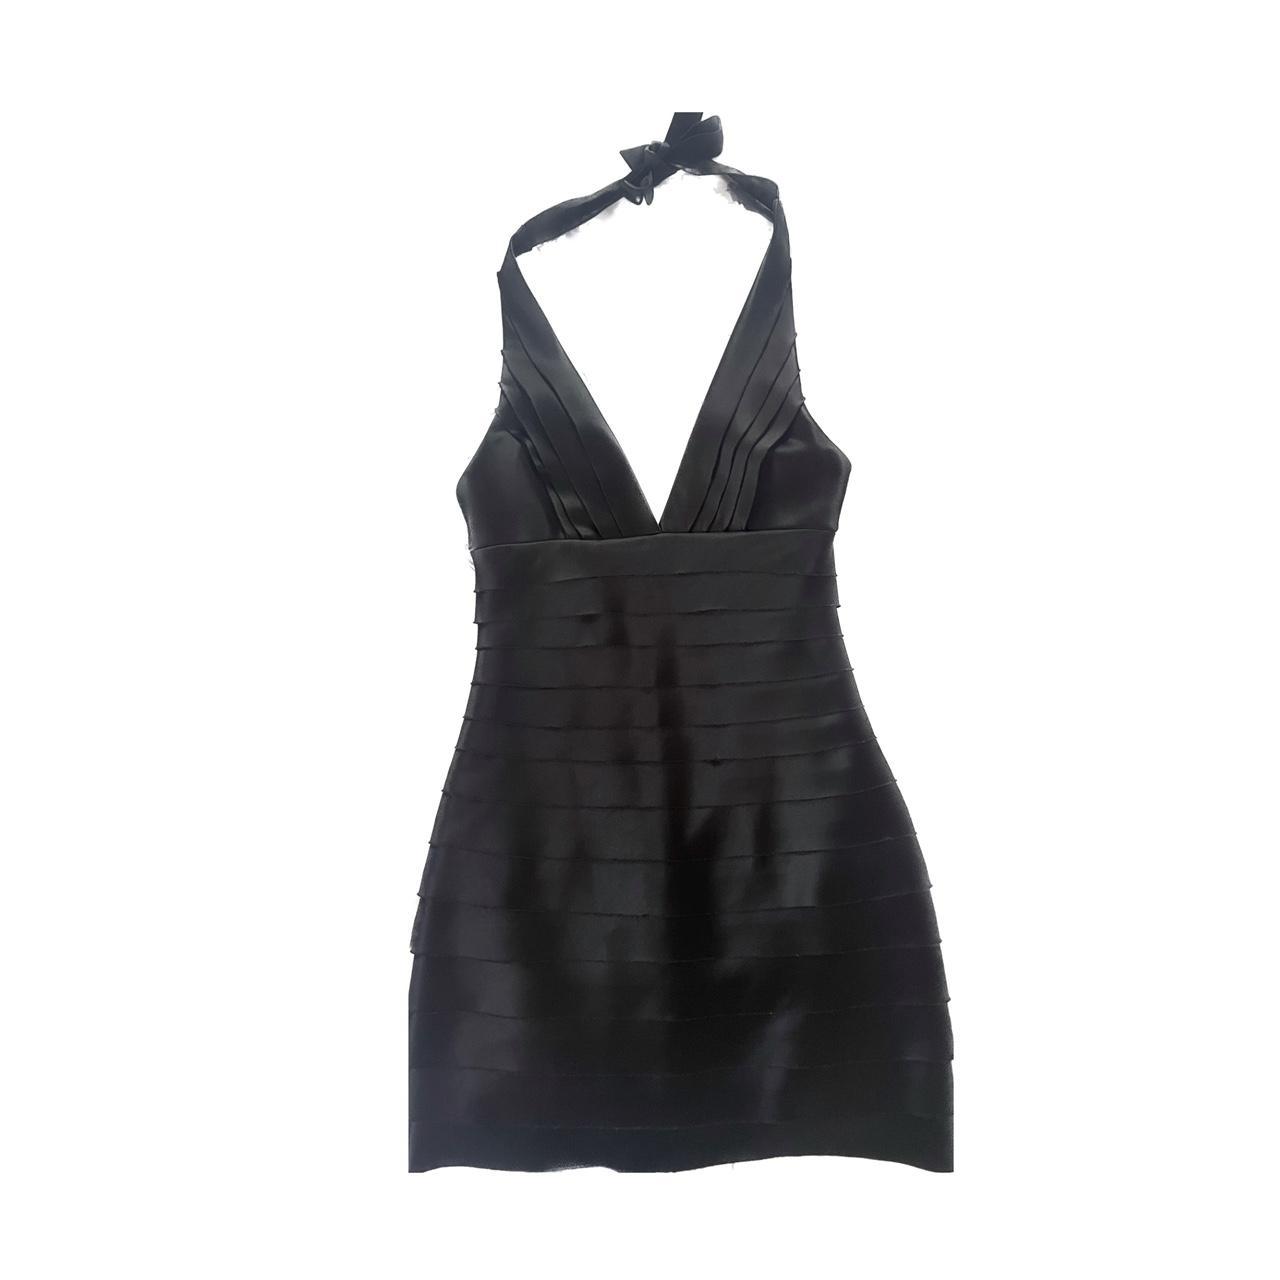 Y2K Bandage Dress. Herve Leger inspired black mini... - Depop